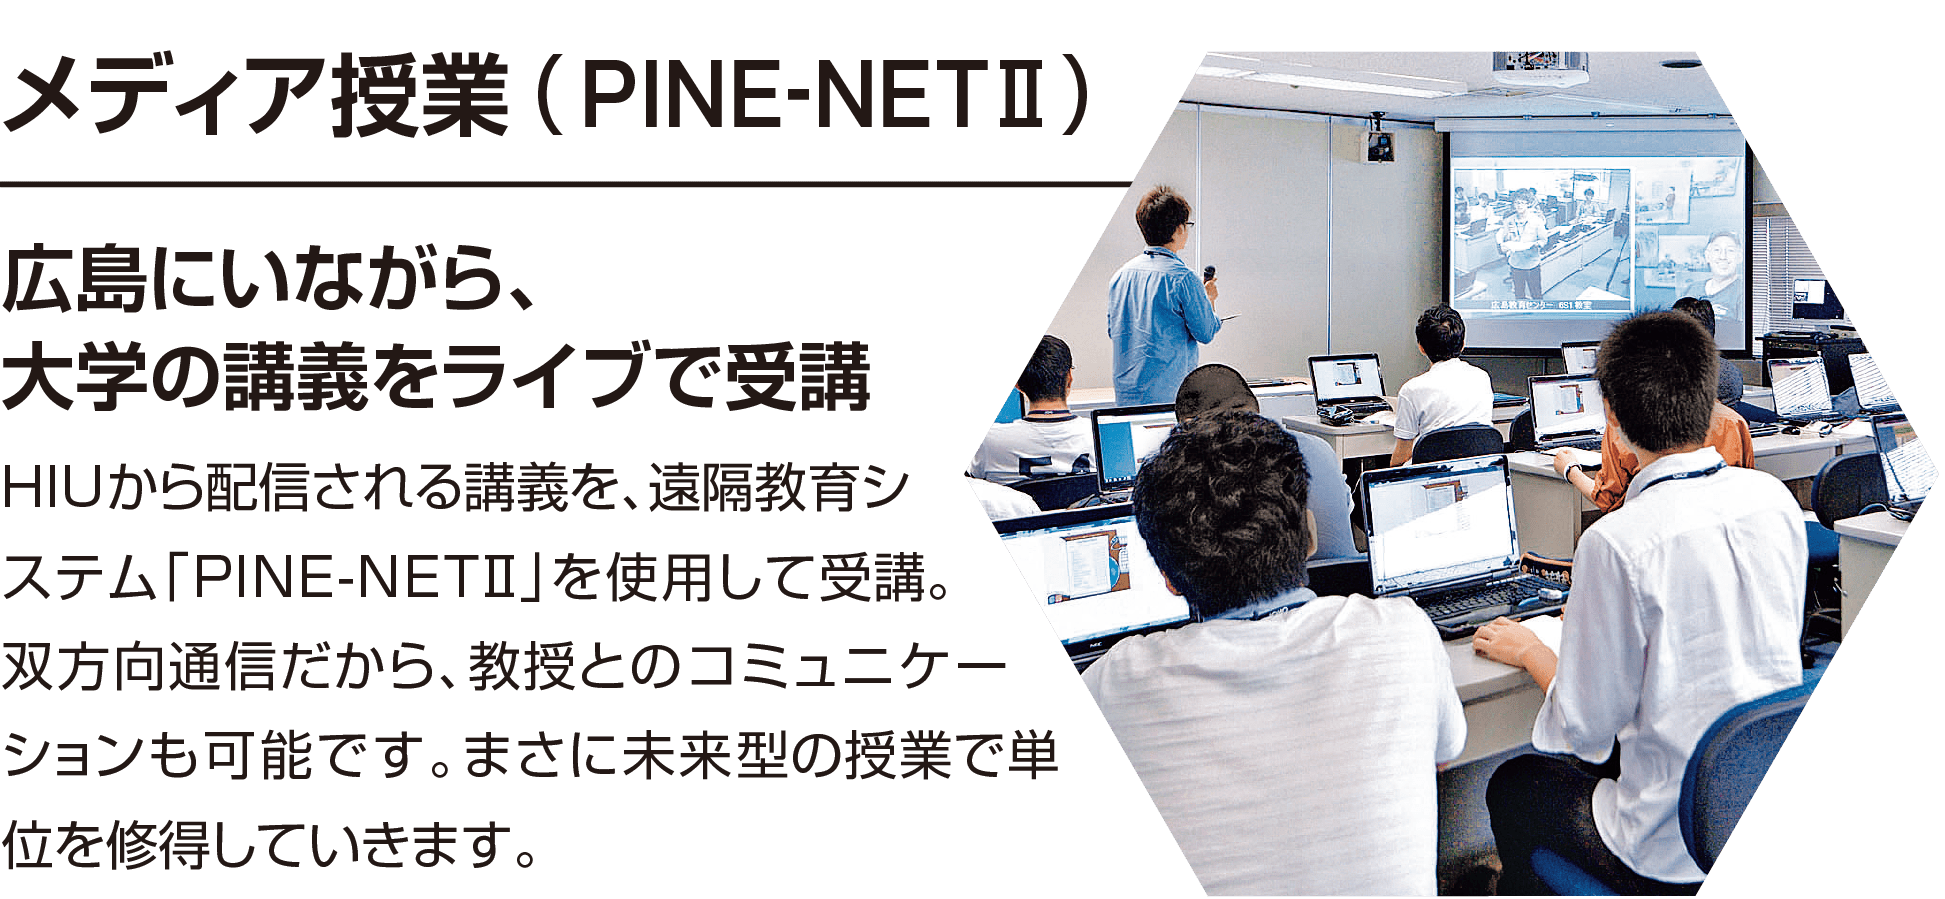 メディア授業(PINE-NET Ⅱ)